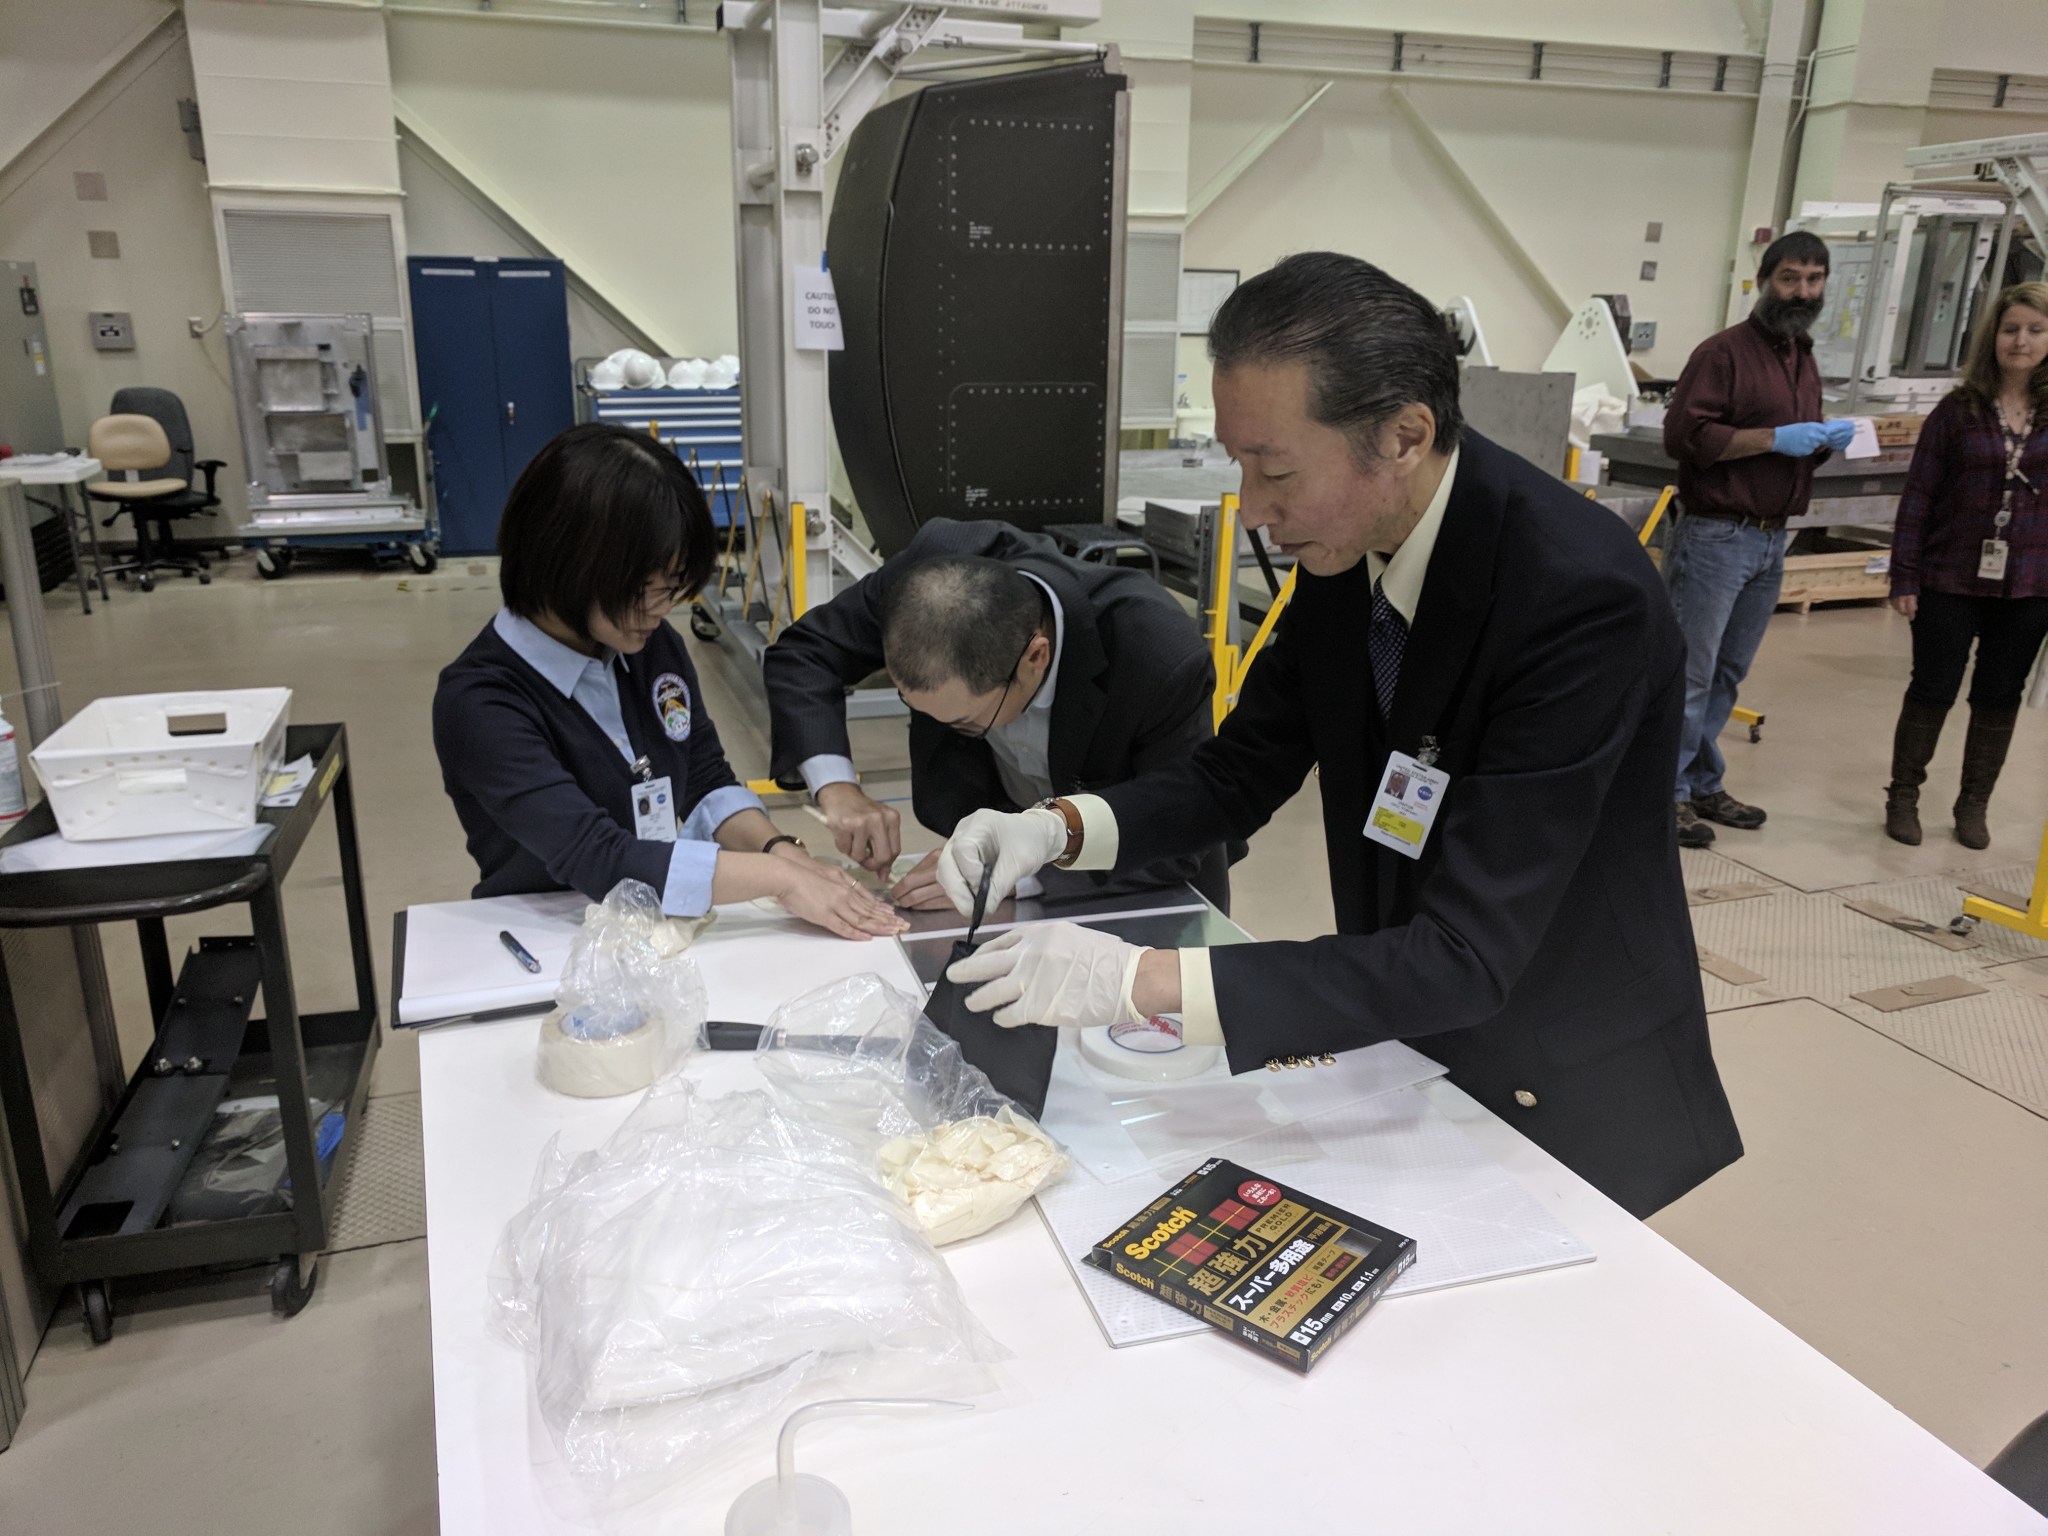 From left, Japanese aerospace engineers Maki Abe, Kosuke Kudo and Yoshiaki Okui, engineer Patrick Fulda and Dona Smith.